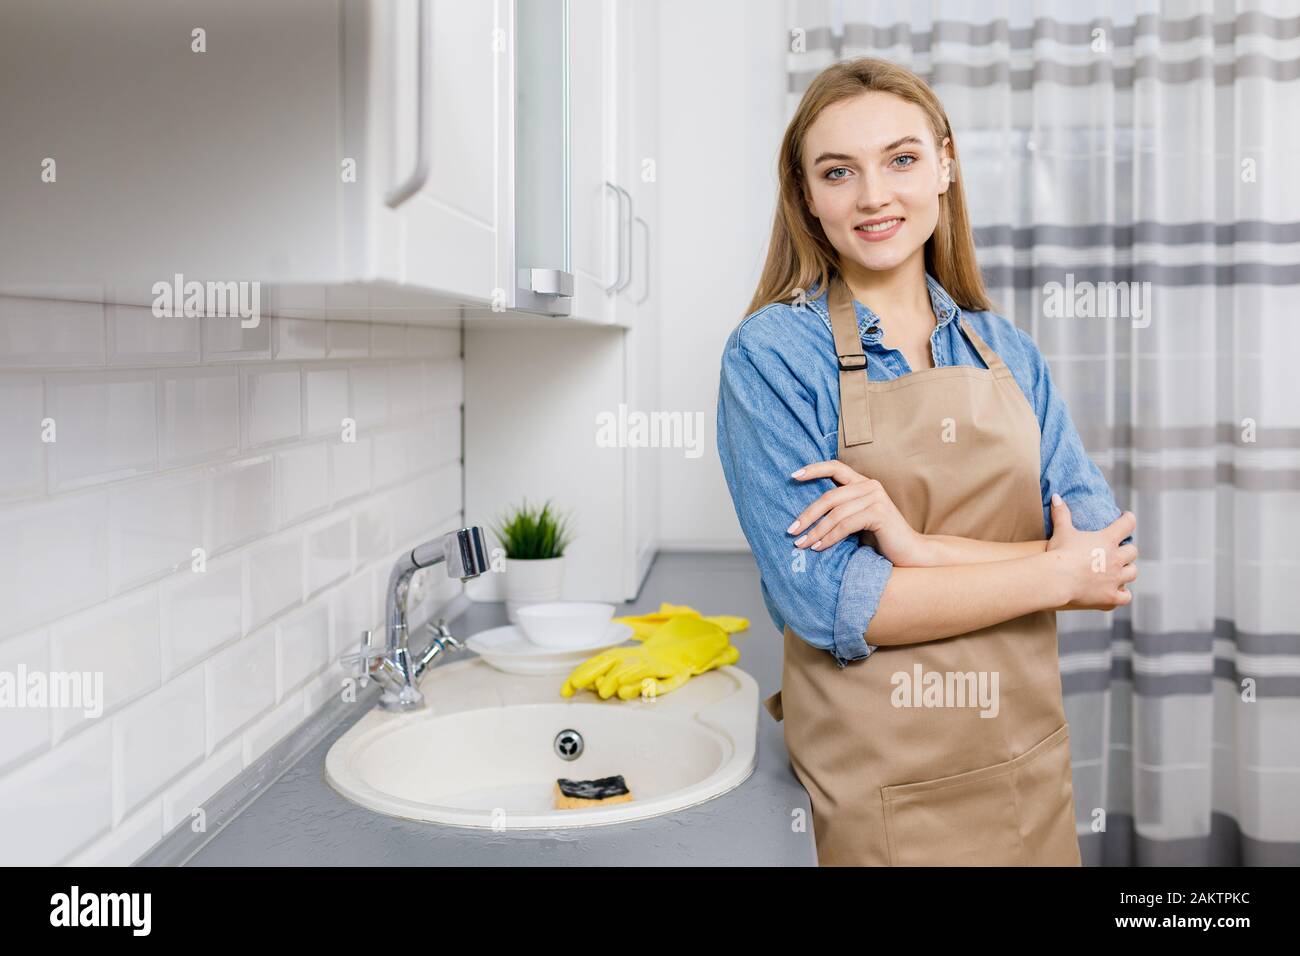 Blonde jeune femme souriante en tablier posant dans la cuisine, les plats sont lavés Banque D'Images